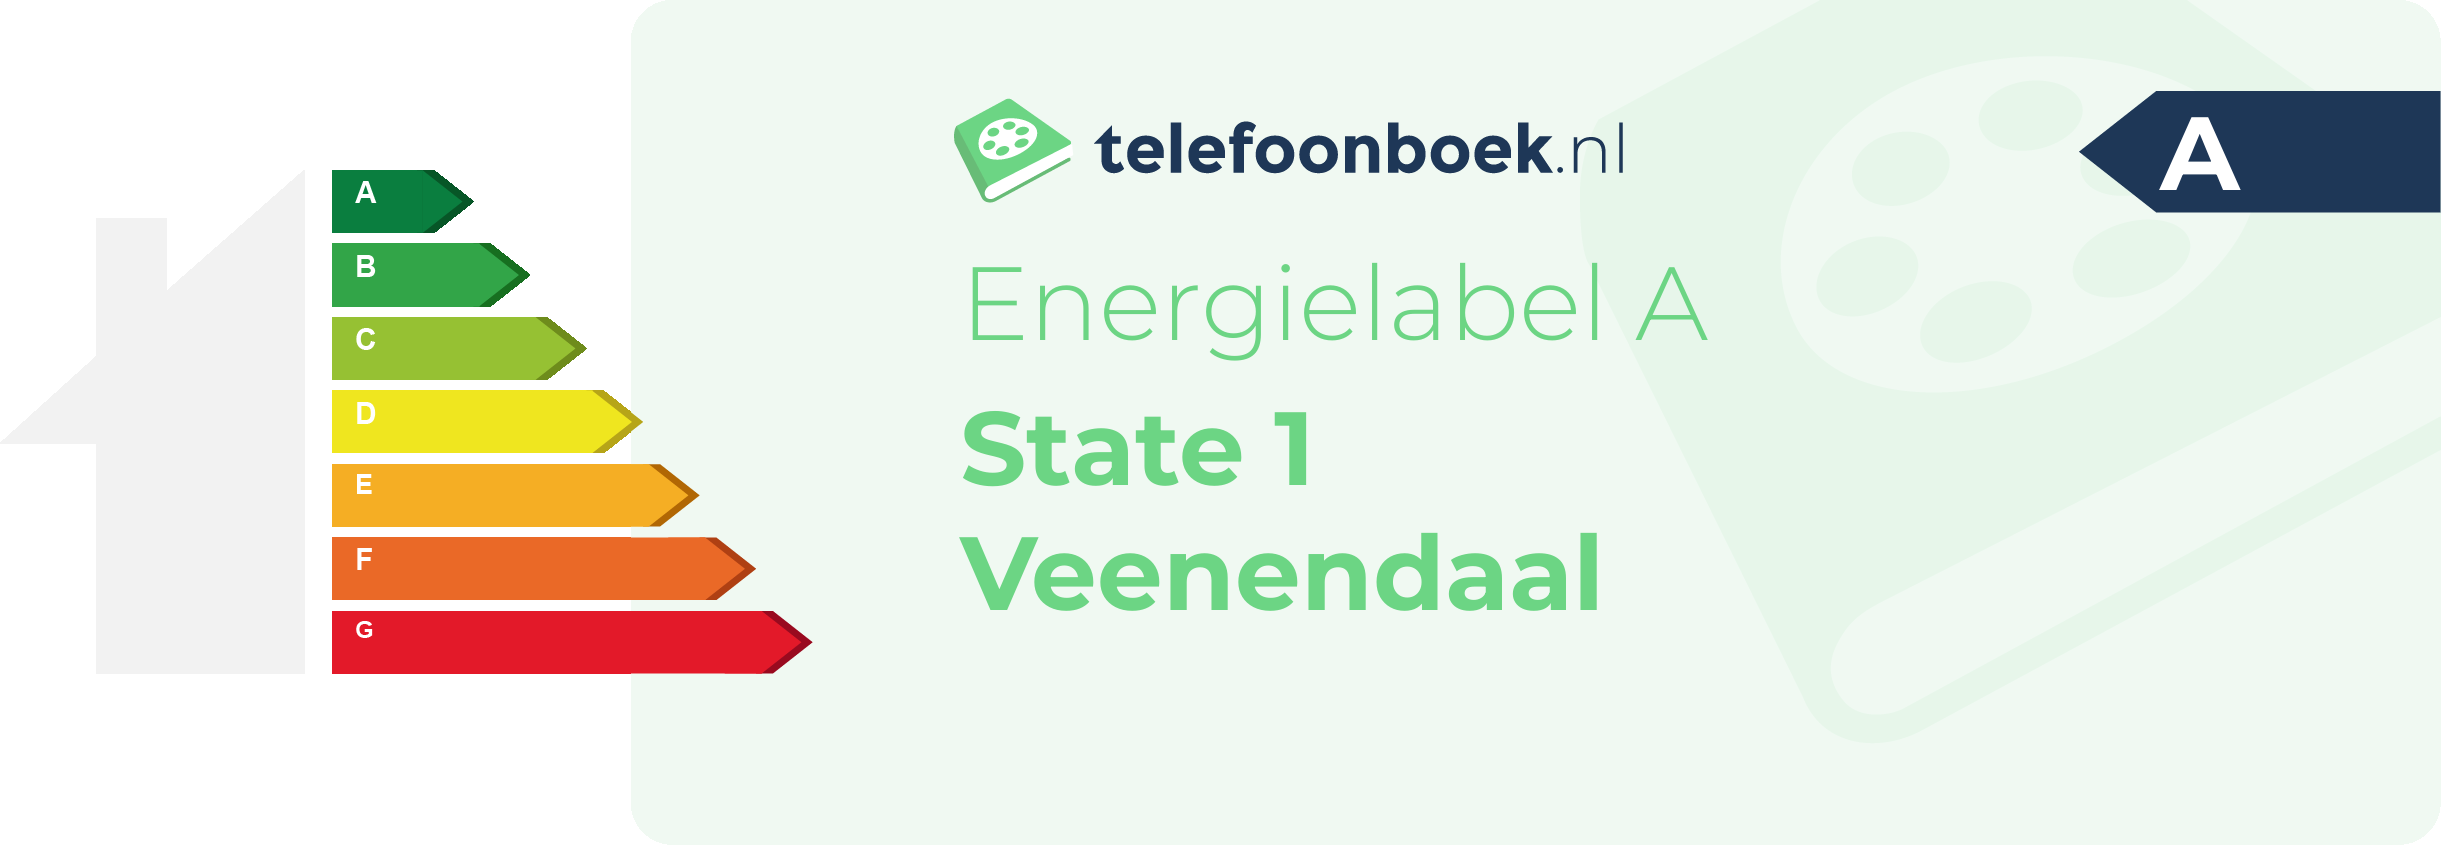 Energielabel State 1 Veenendaal